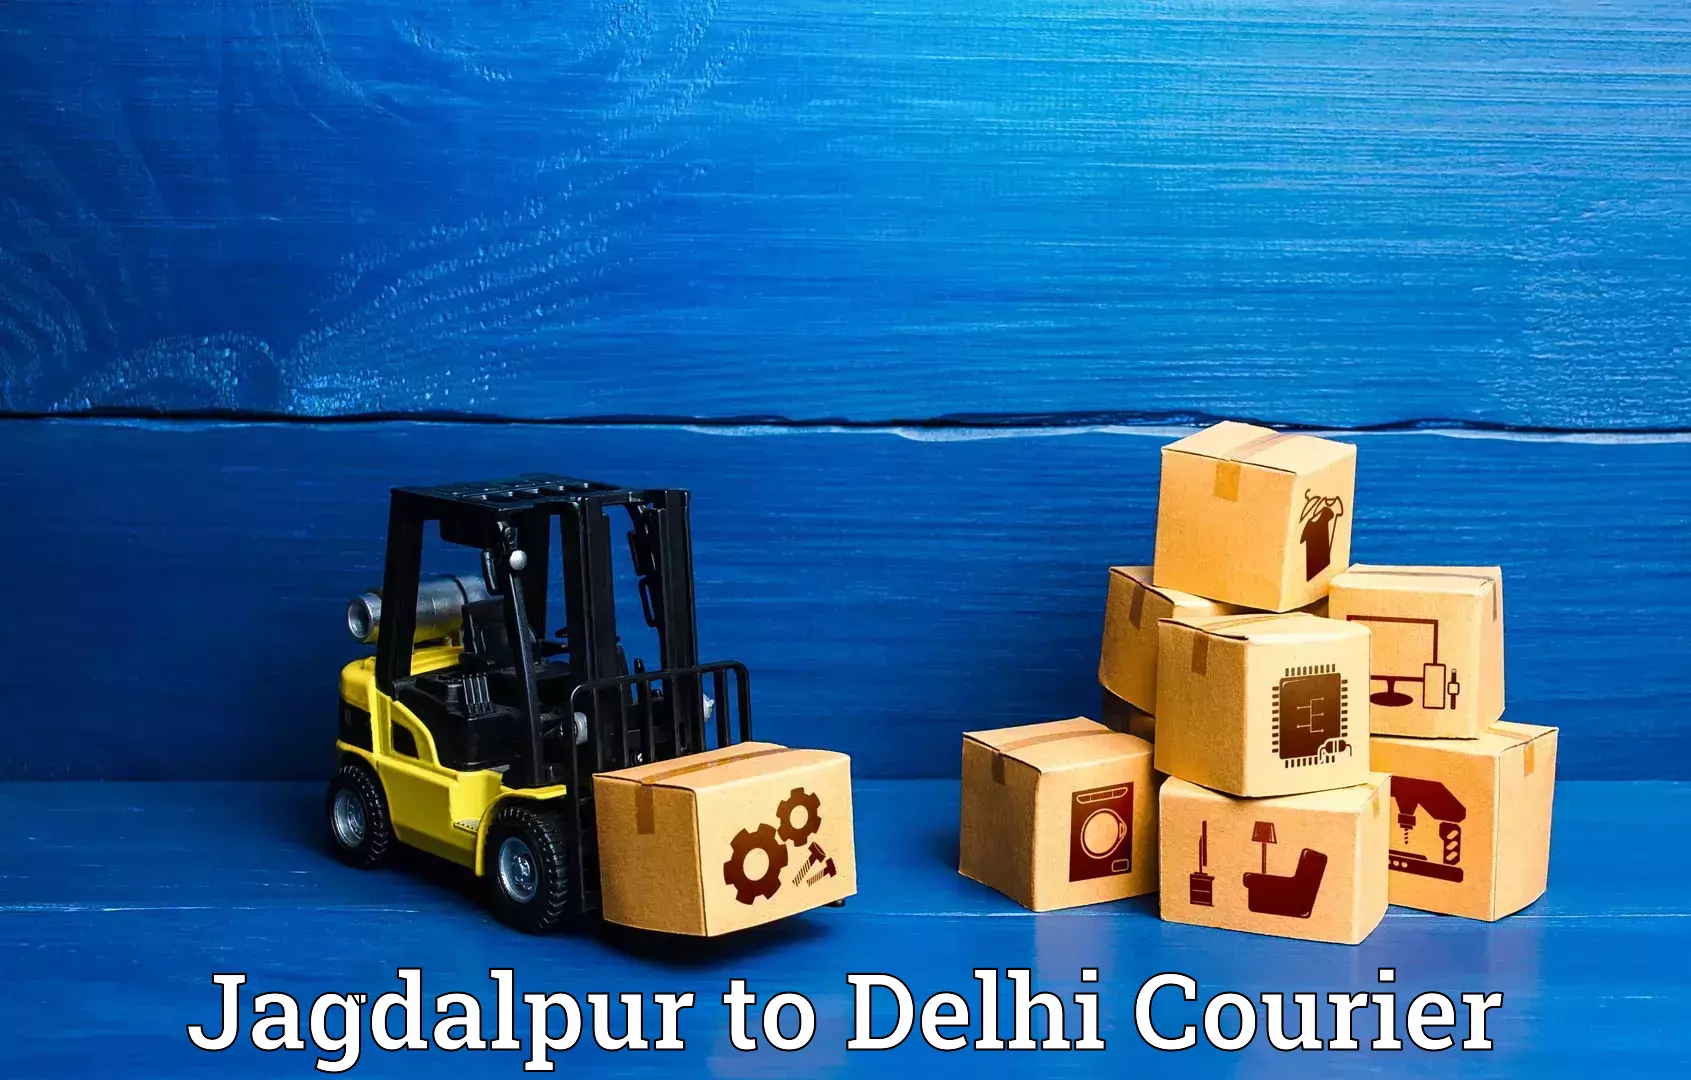 Baggage transport innovation Jagdalpur to IIT Delhi